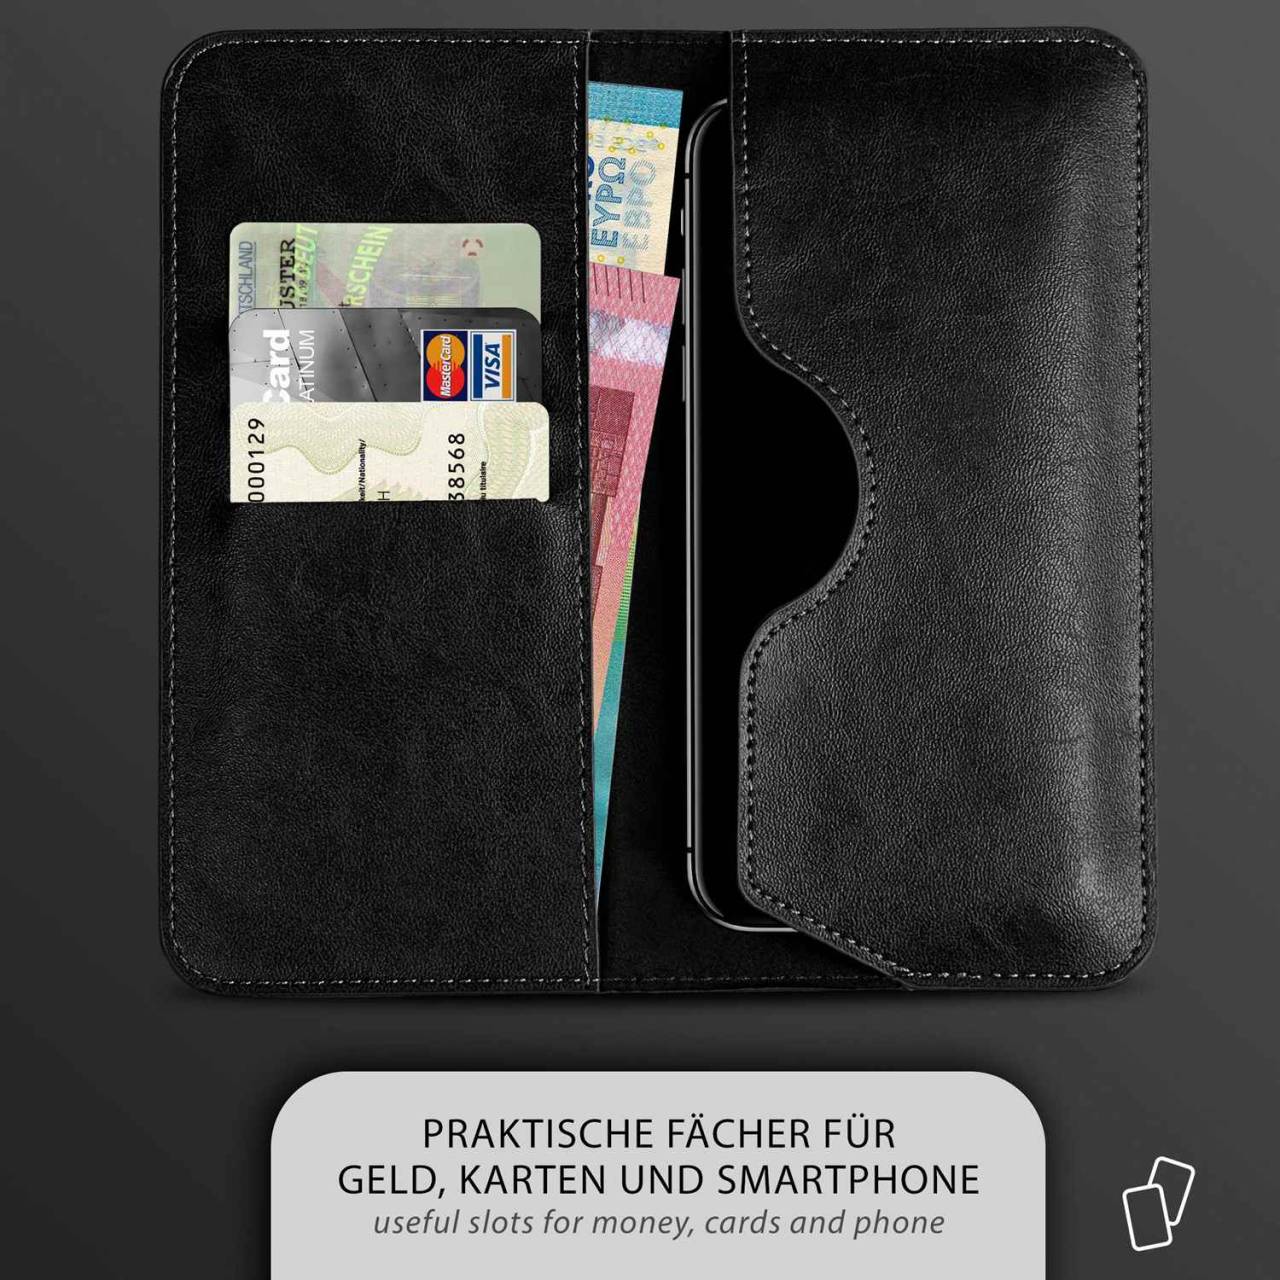 moex Purse Case für LG Spirit – Handytasche mit Geldbörses aus PU Leder, Geld- & Handyfach